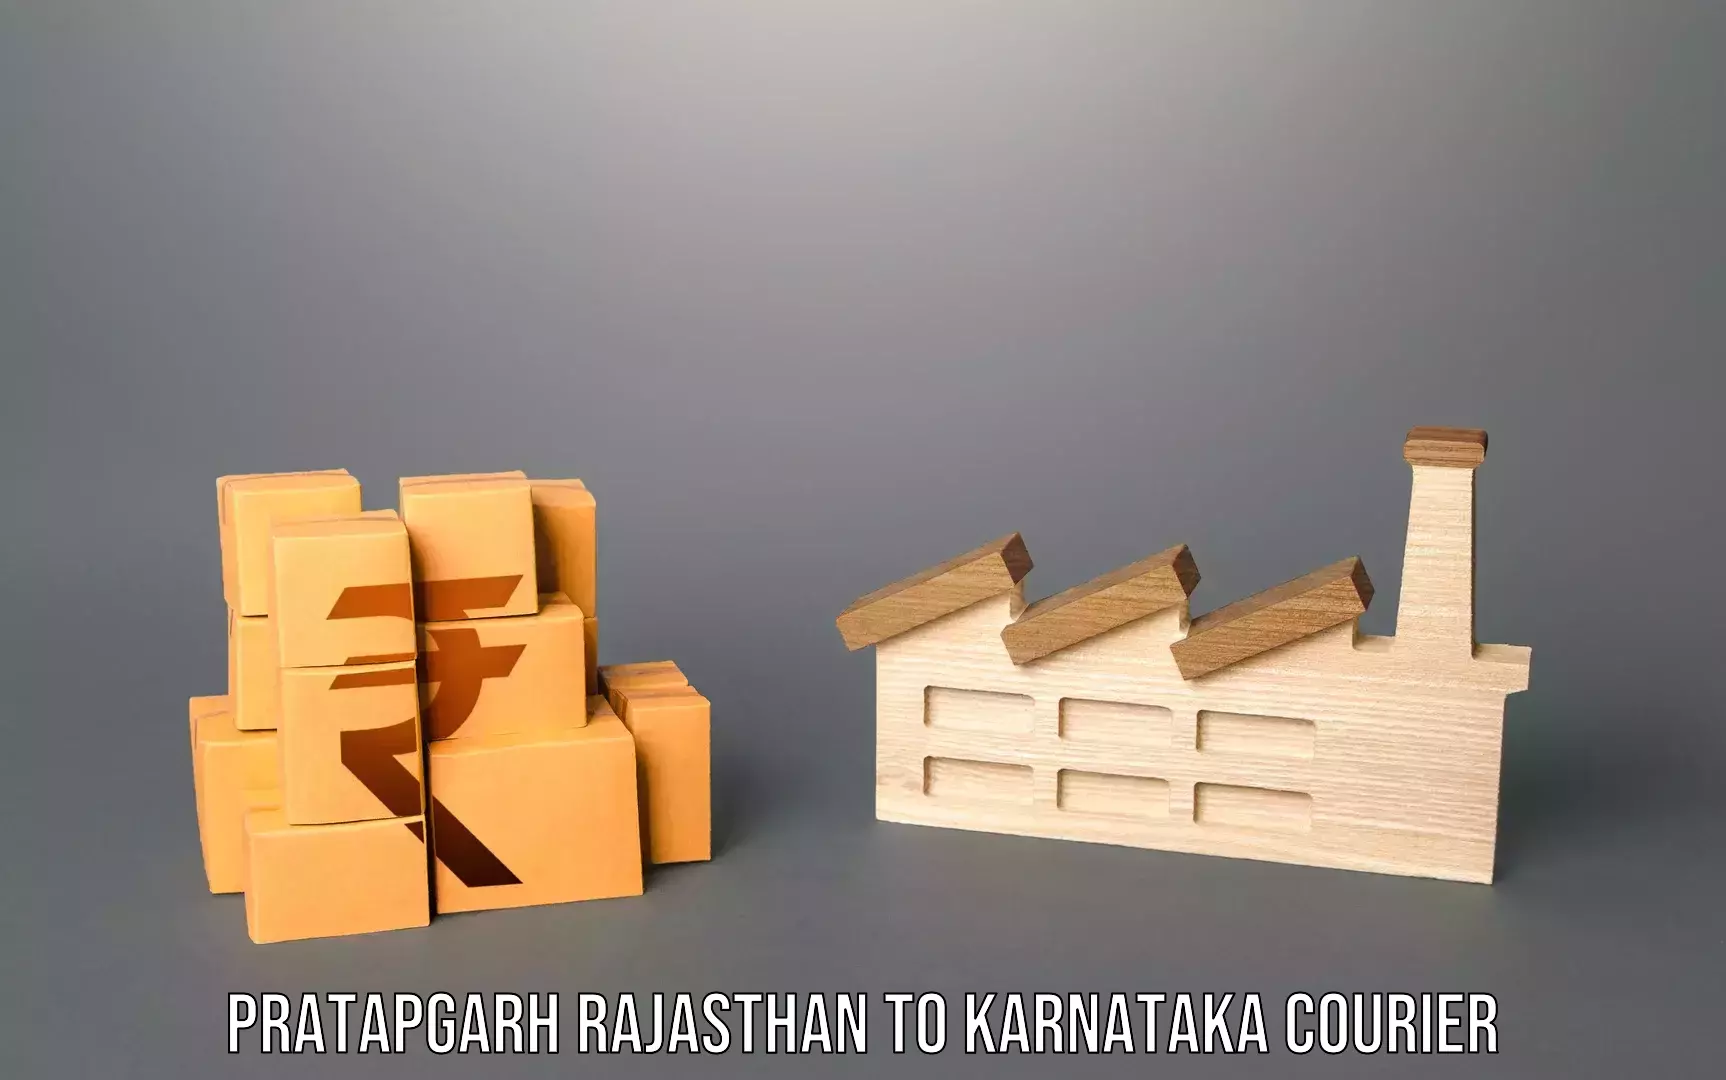 Baggage transport network Pratapgarh Rajasthan to Karnataka